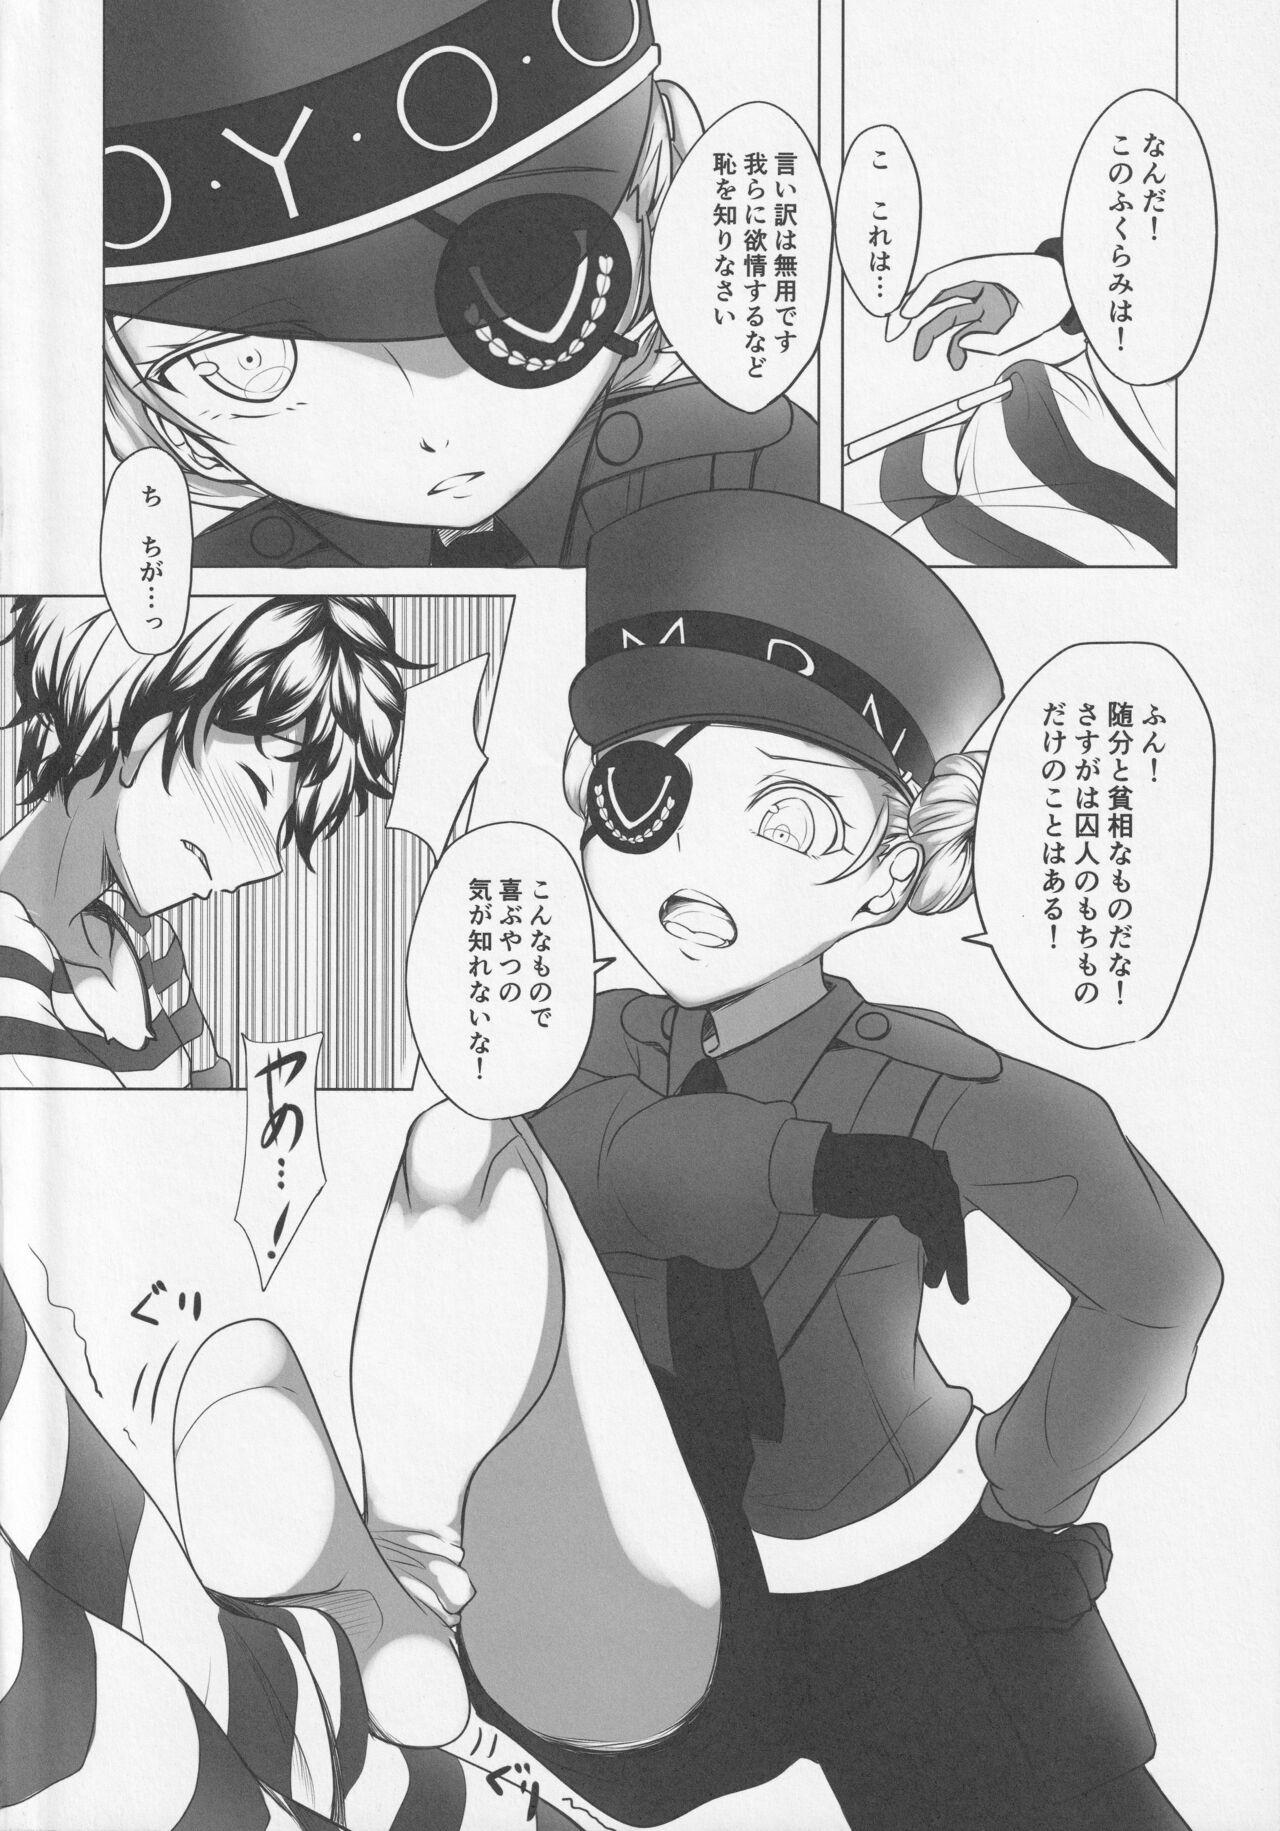 Cream Kisama ni wa kōsei ga hitsuyō no yōda na! - Persona 5 Deepthroat - Page 3